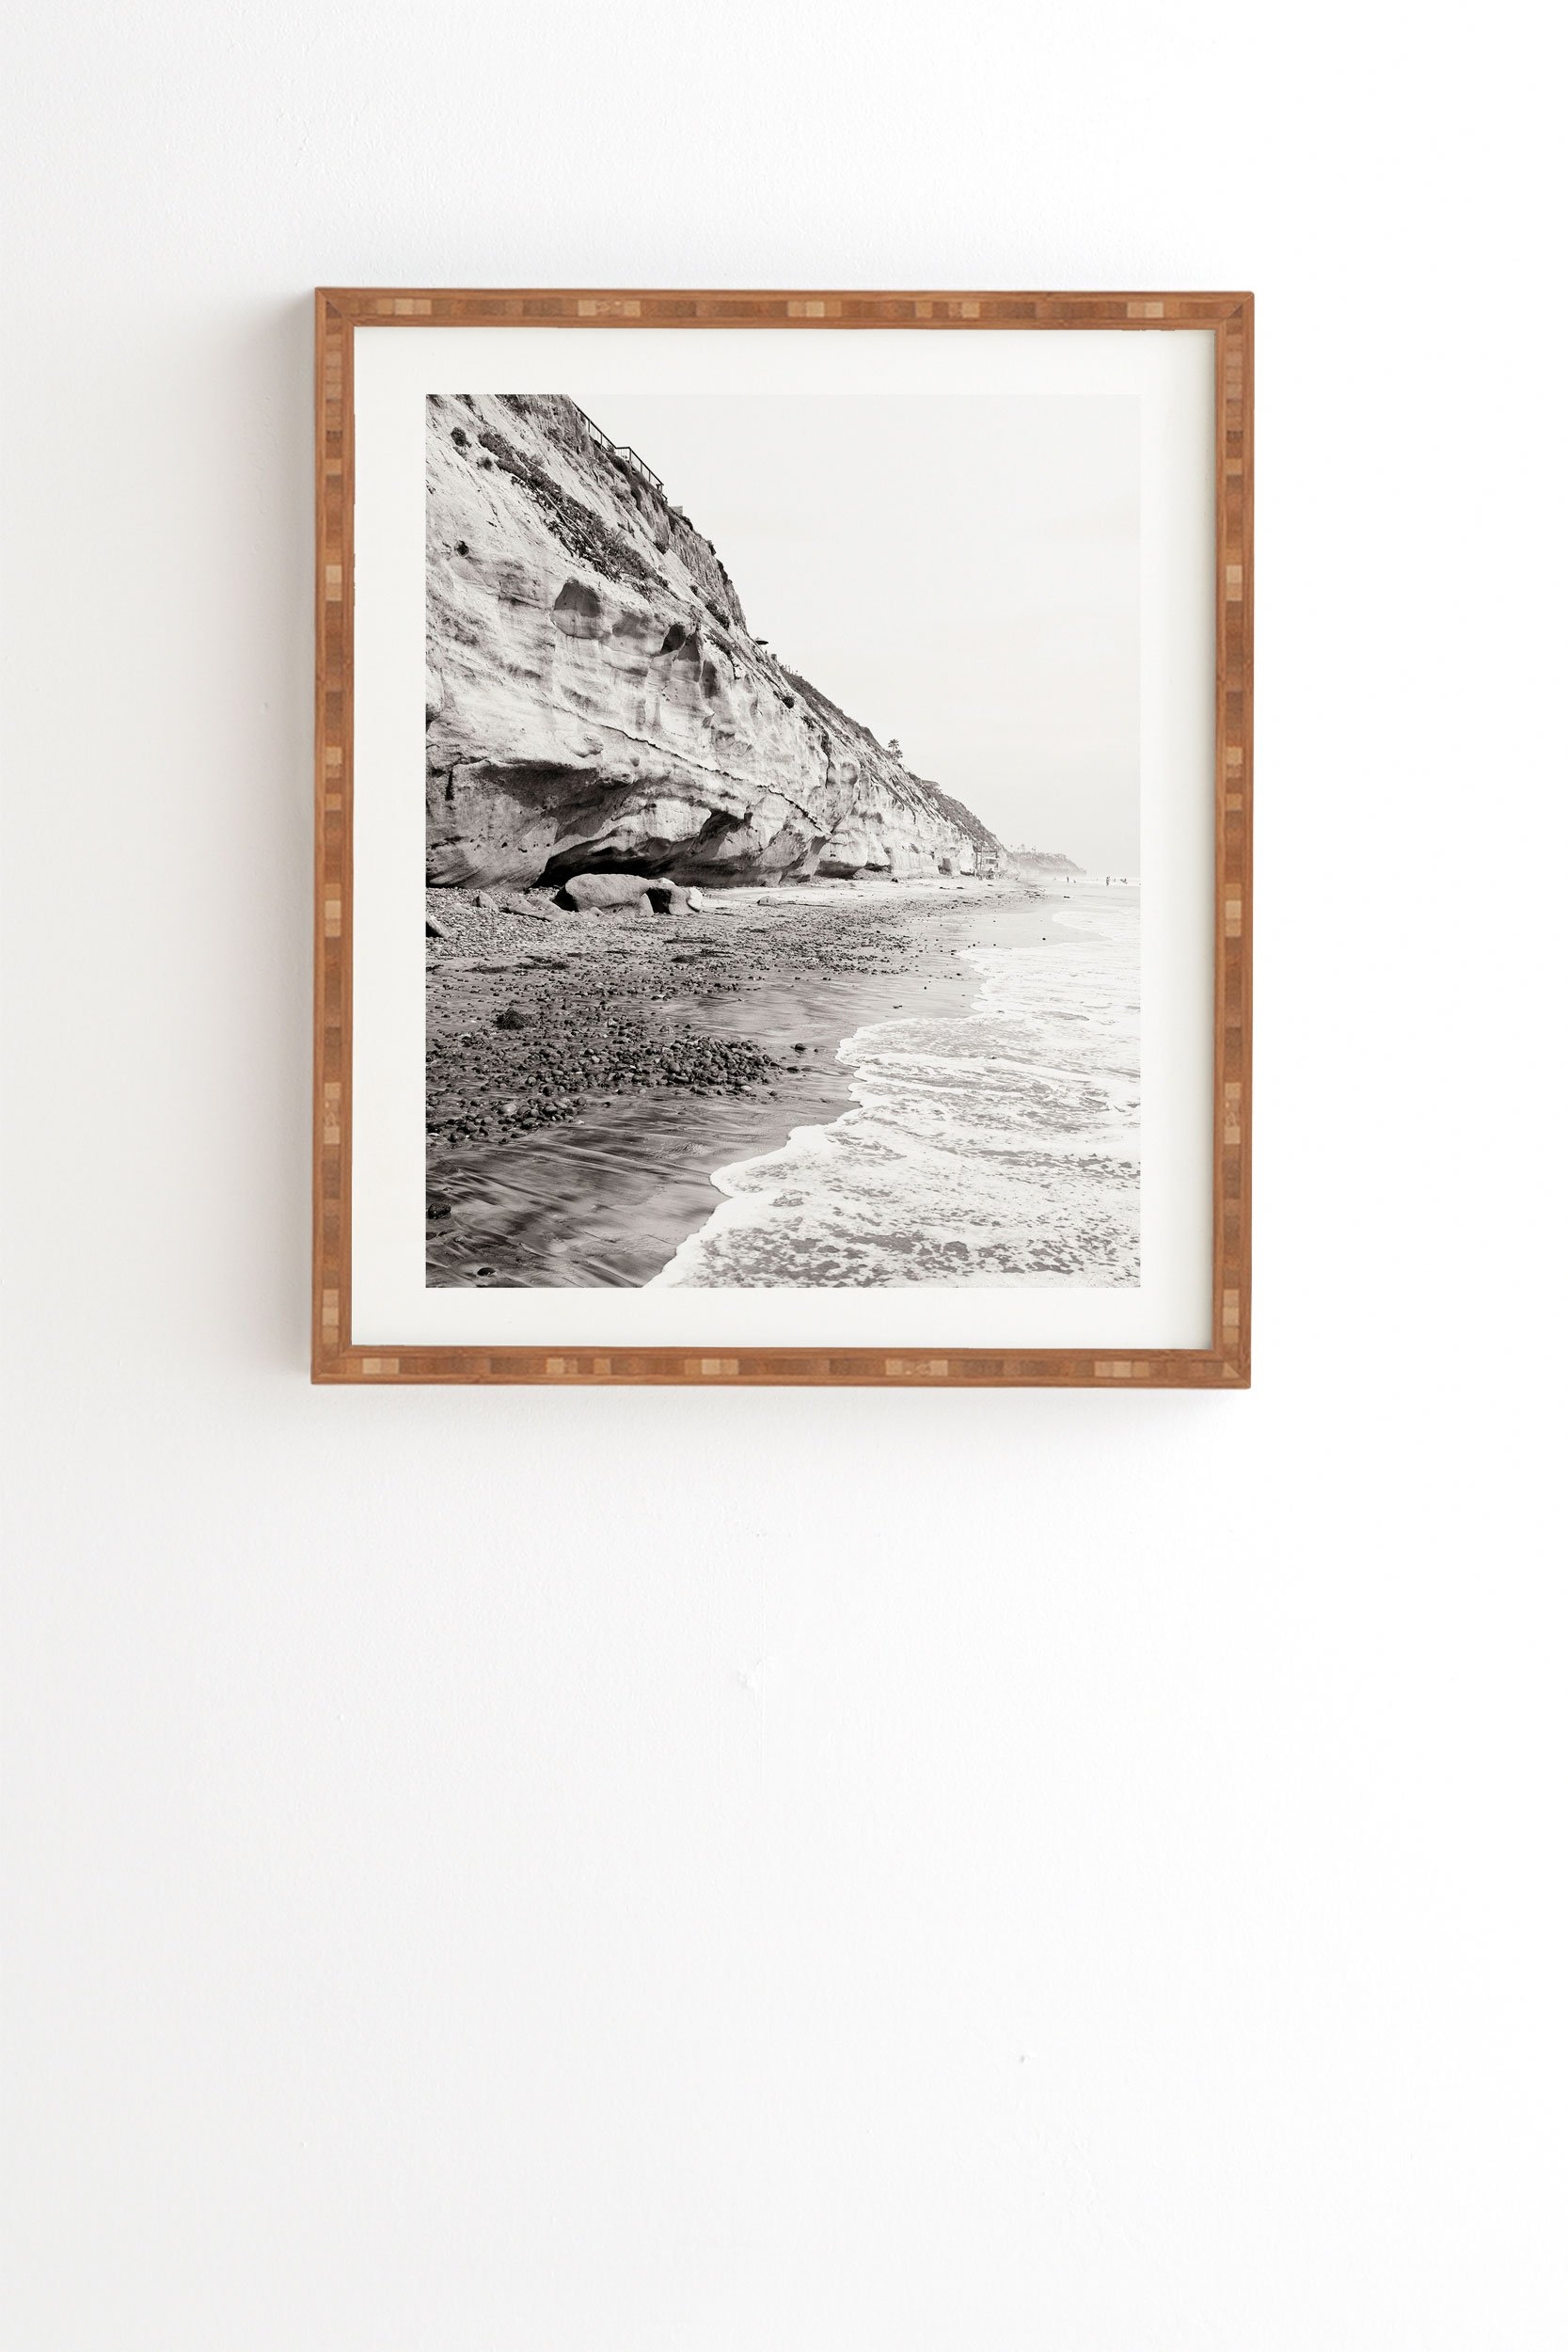 Bree Madden Stonesteps Framed Wall Art - Image 0